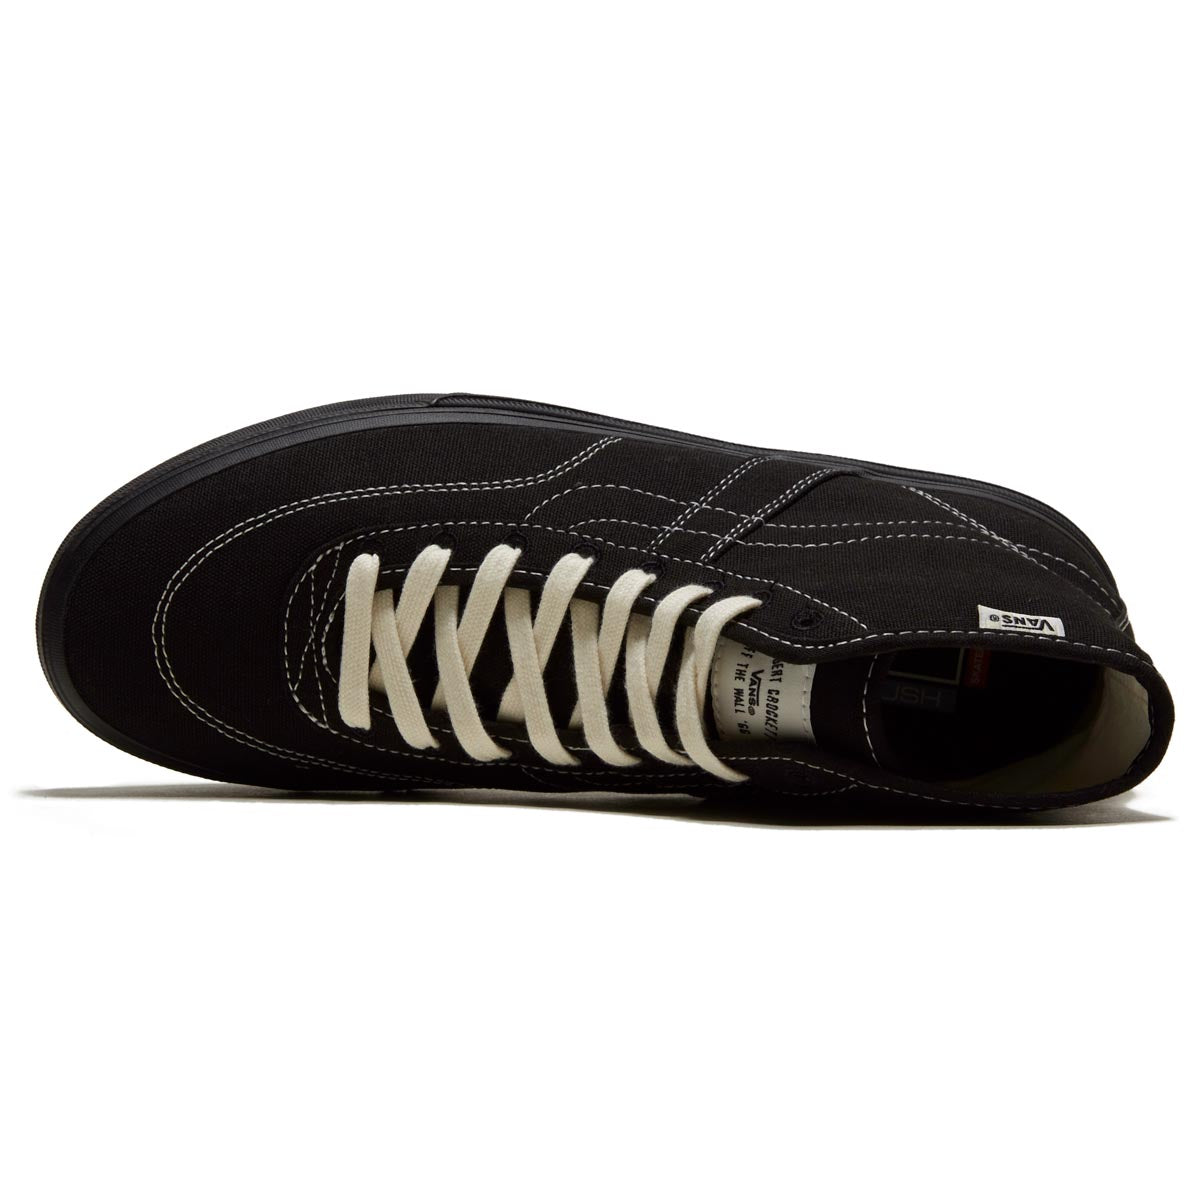 Vans Crockett High Decon Shoes - Canvas Black/Black/White image 3